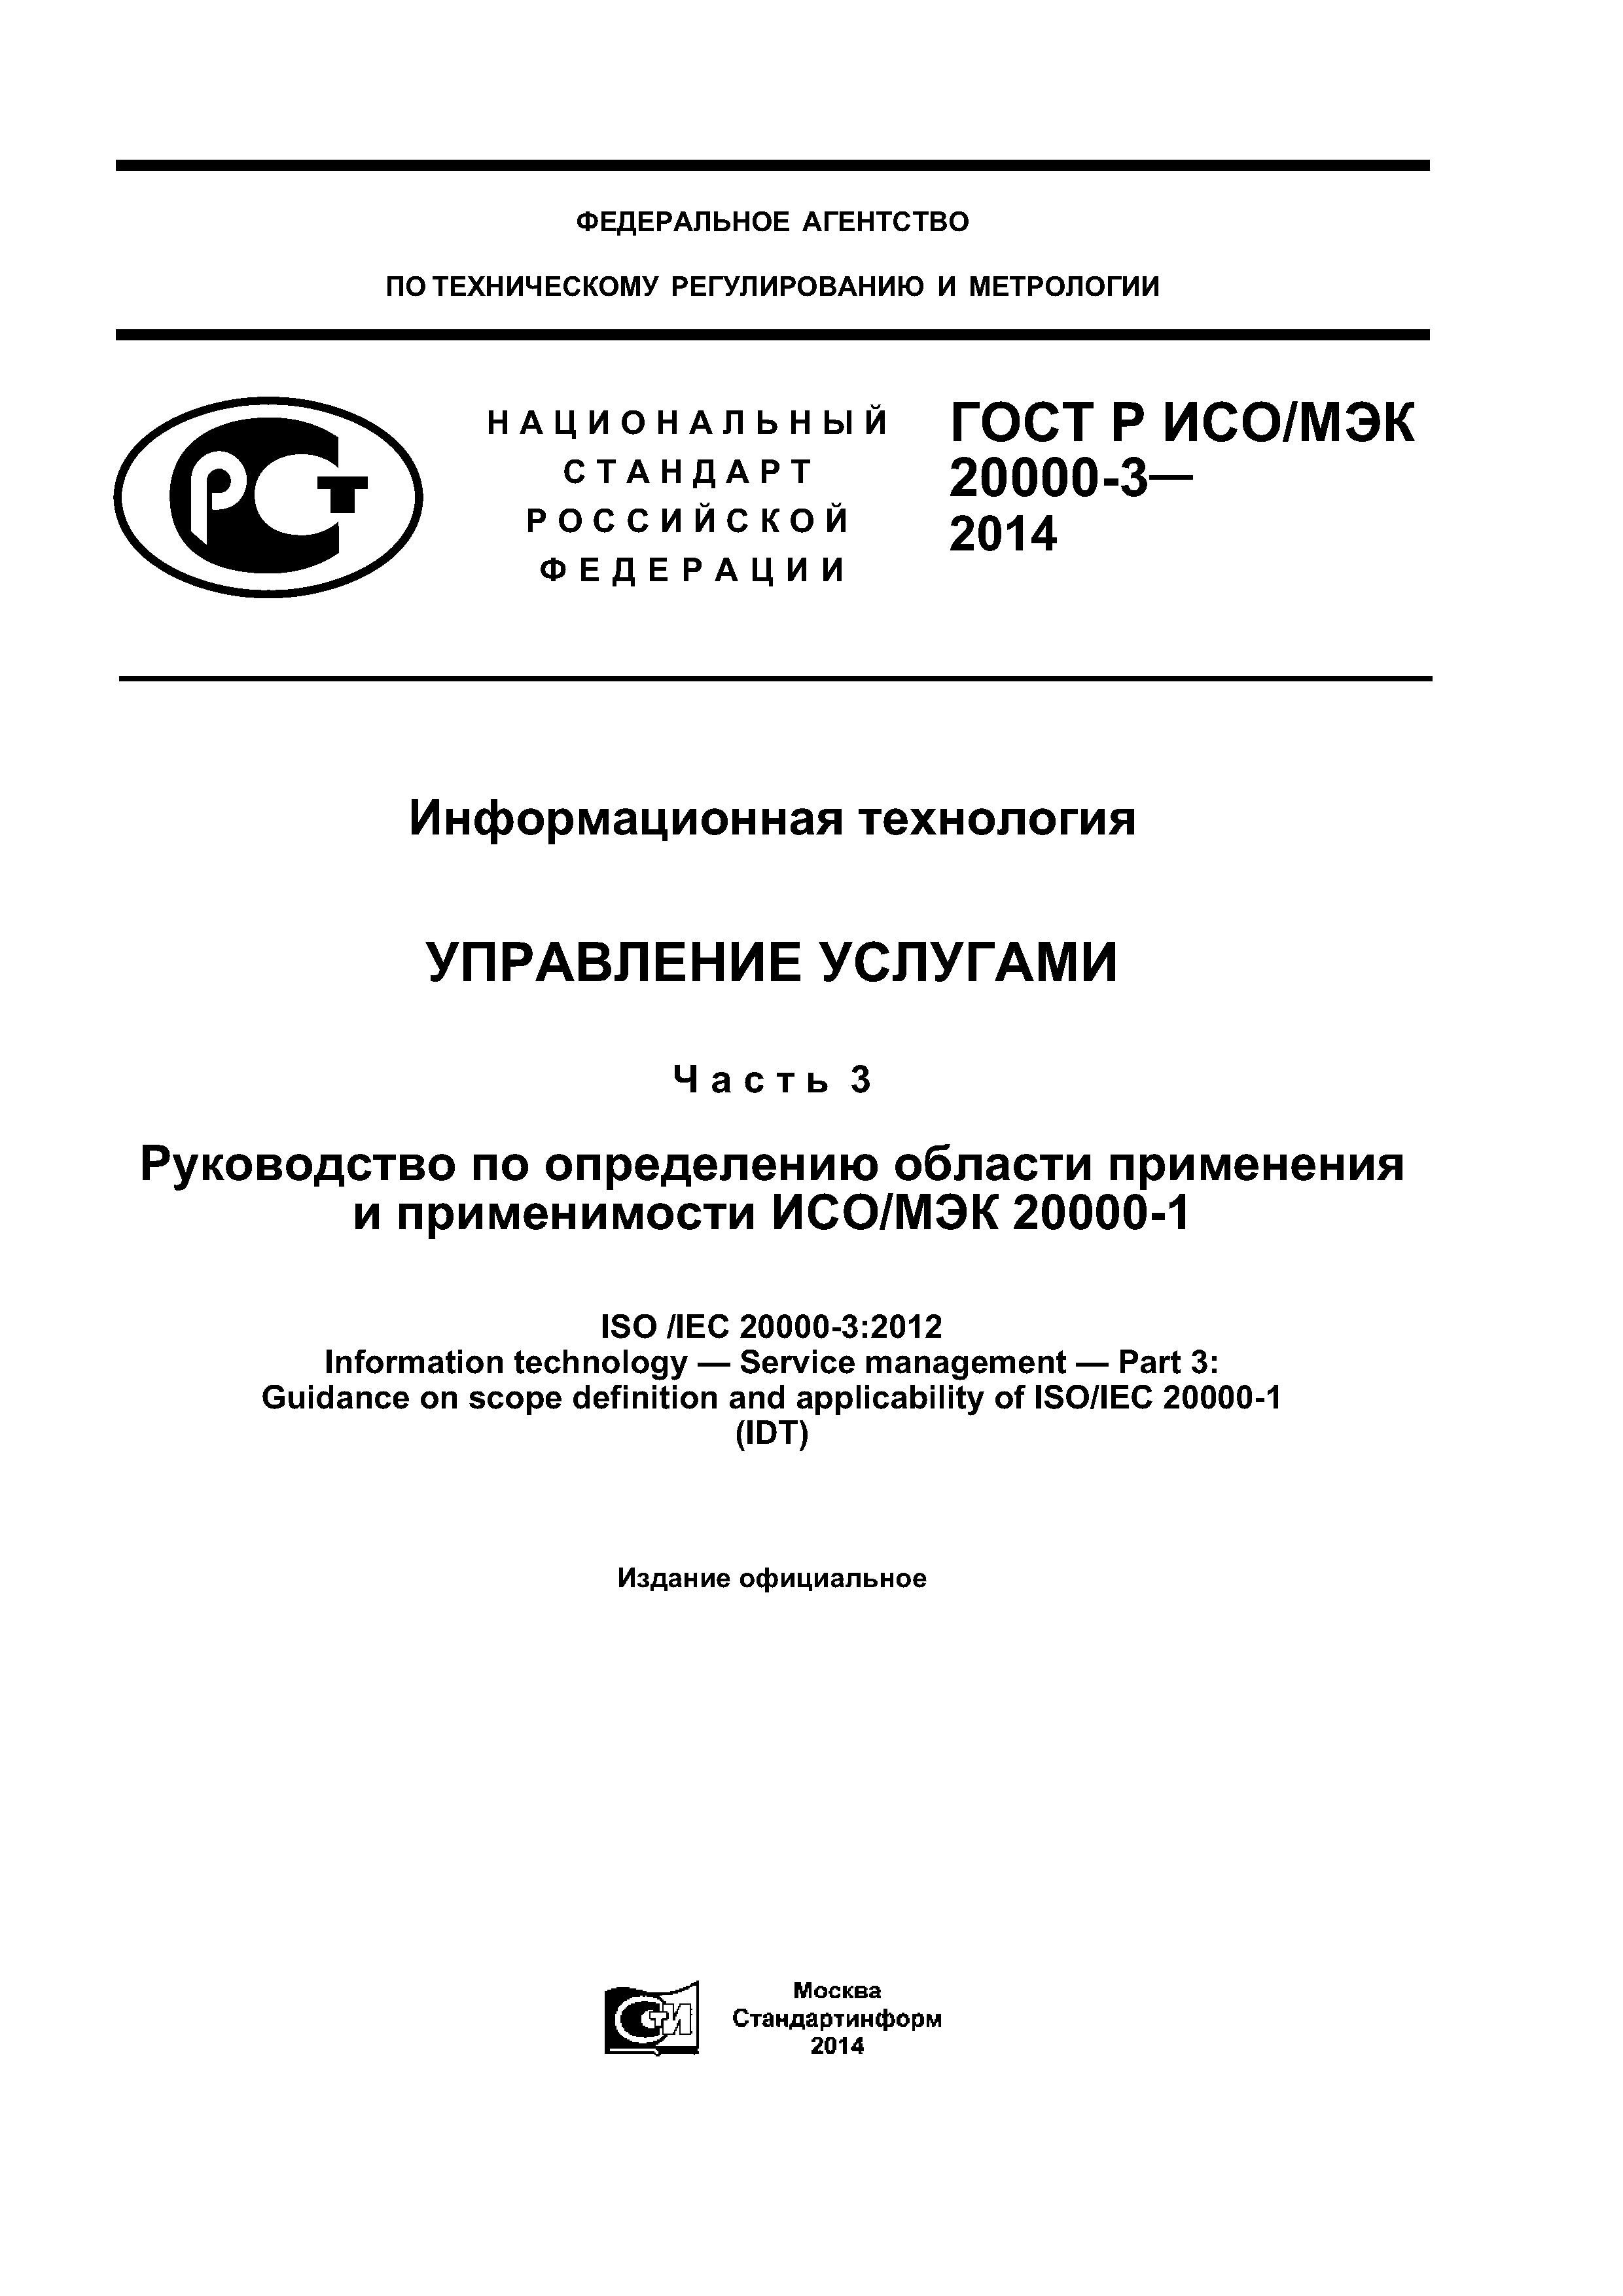 ГОСТ Р ИСО/МЭК 20000-3-2014